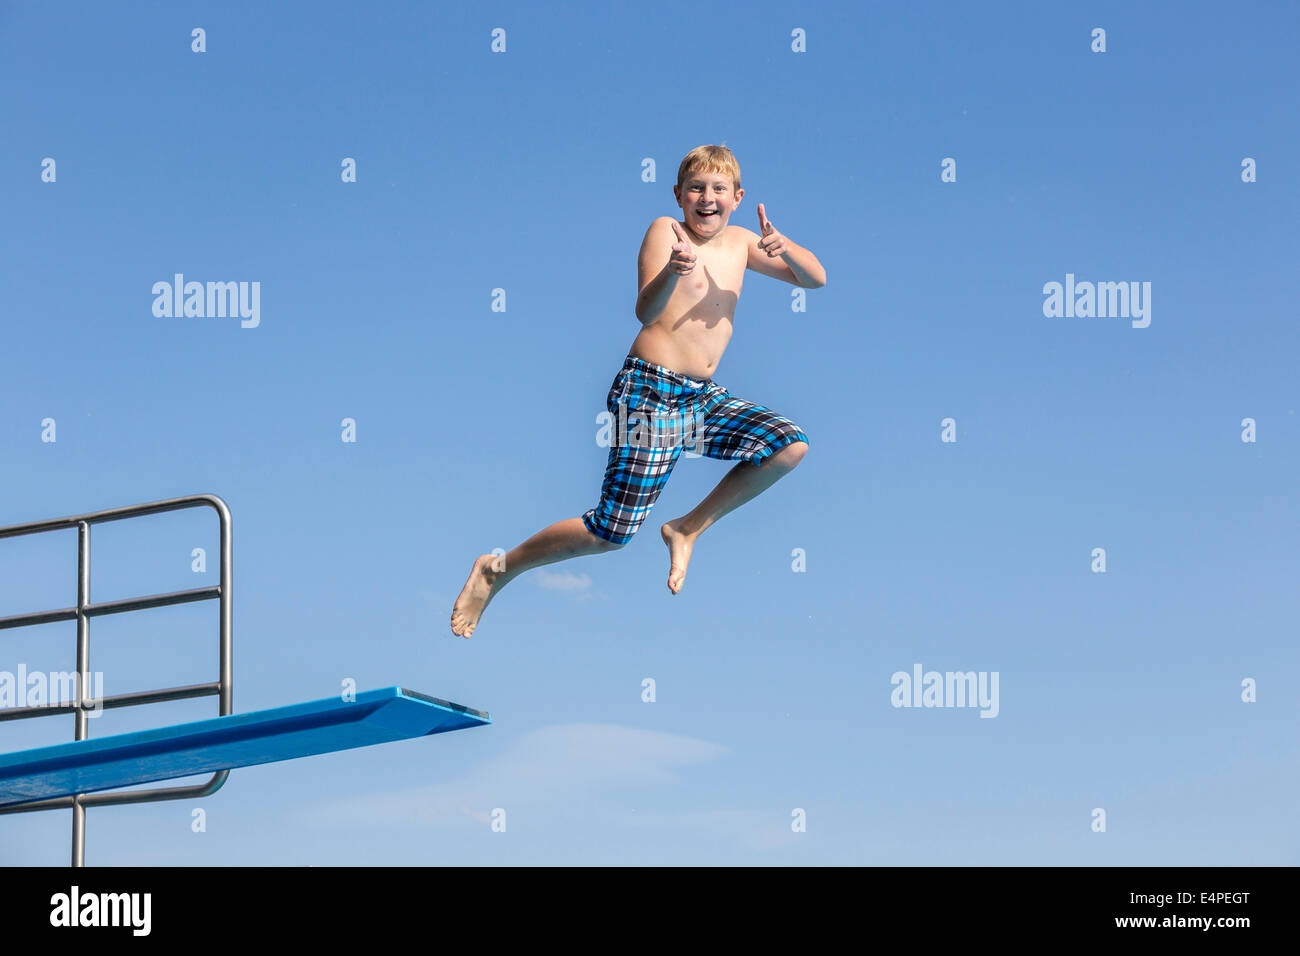 Junge, 10 Jahre, springen von einem drei-Meter-Brett macht ein Daumen hoch Geste Stockfoto